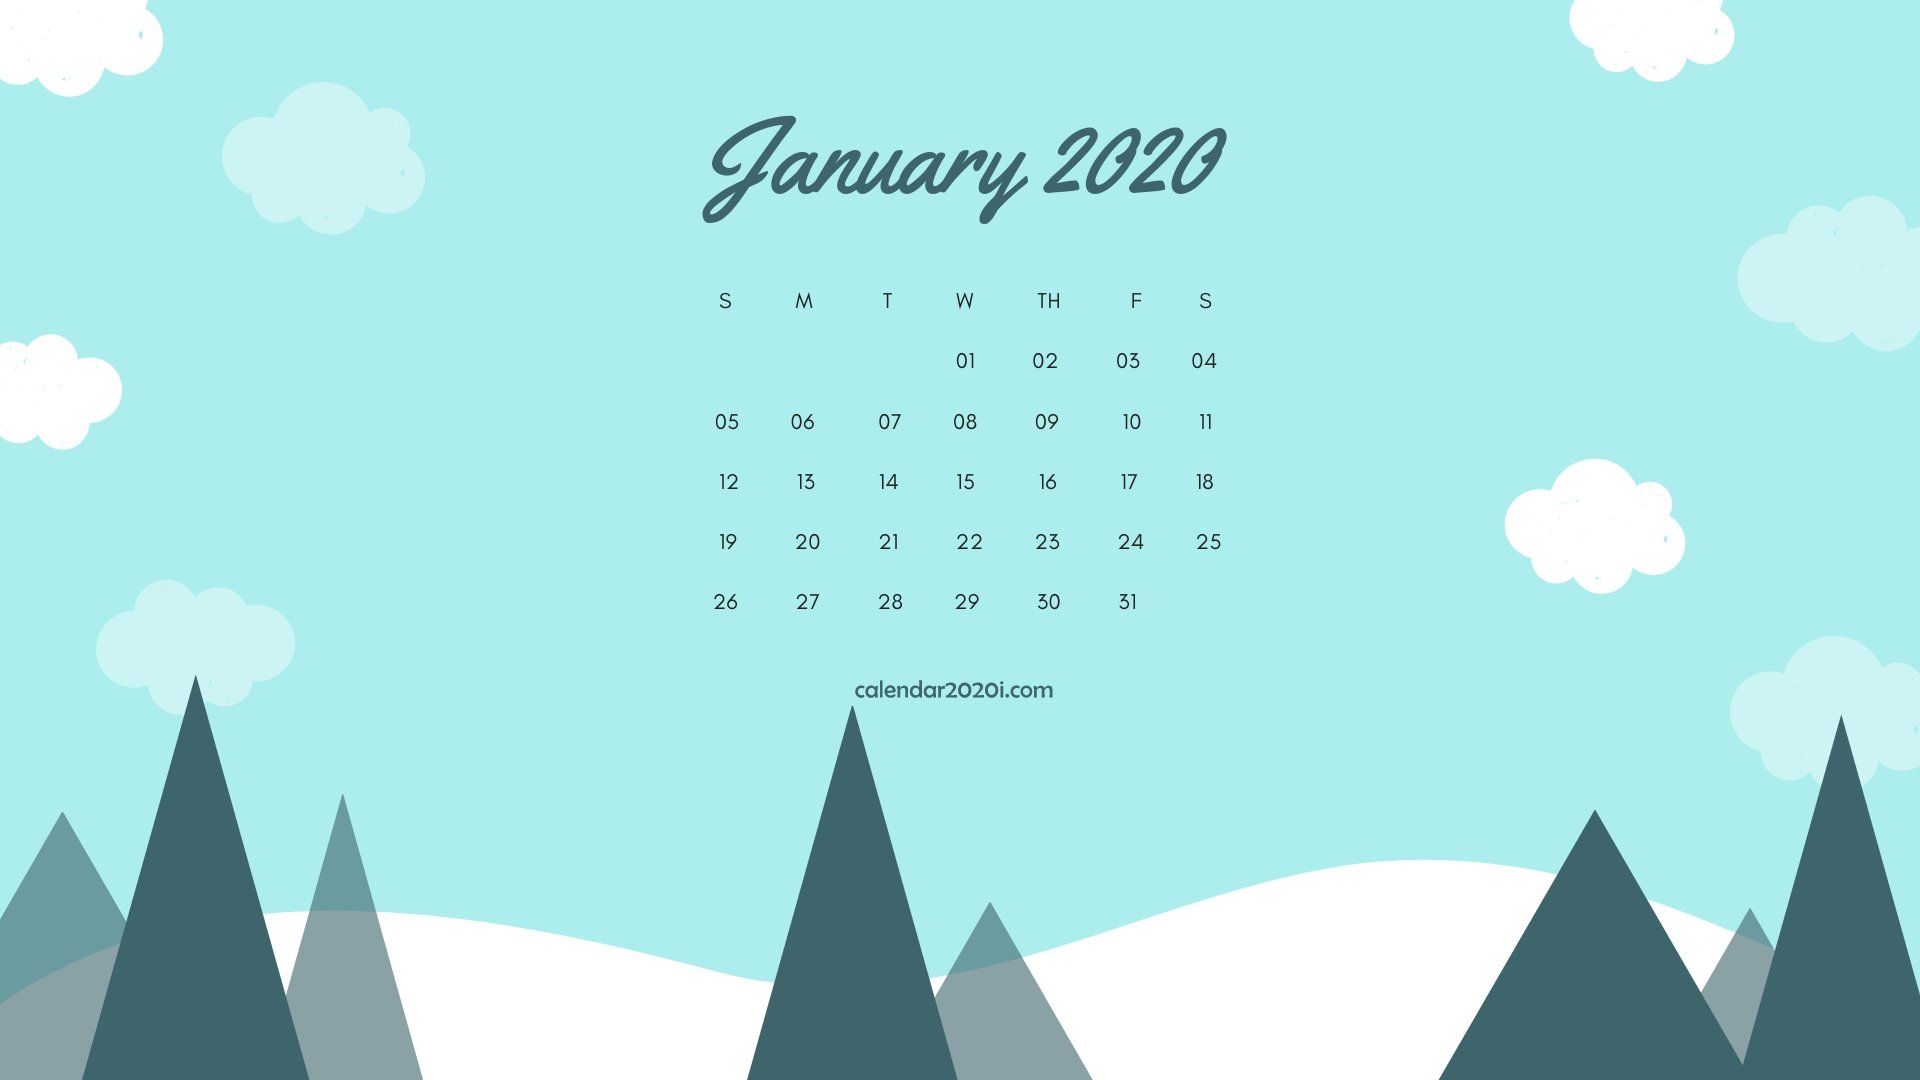 January 2020 Calendar Wallpapers   Top January 2020 Calendar 1920x1080